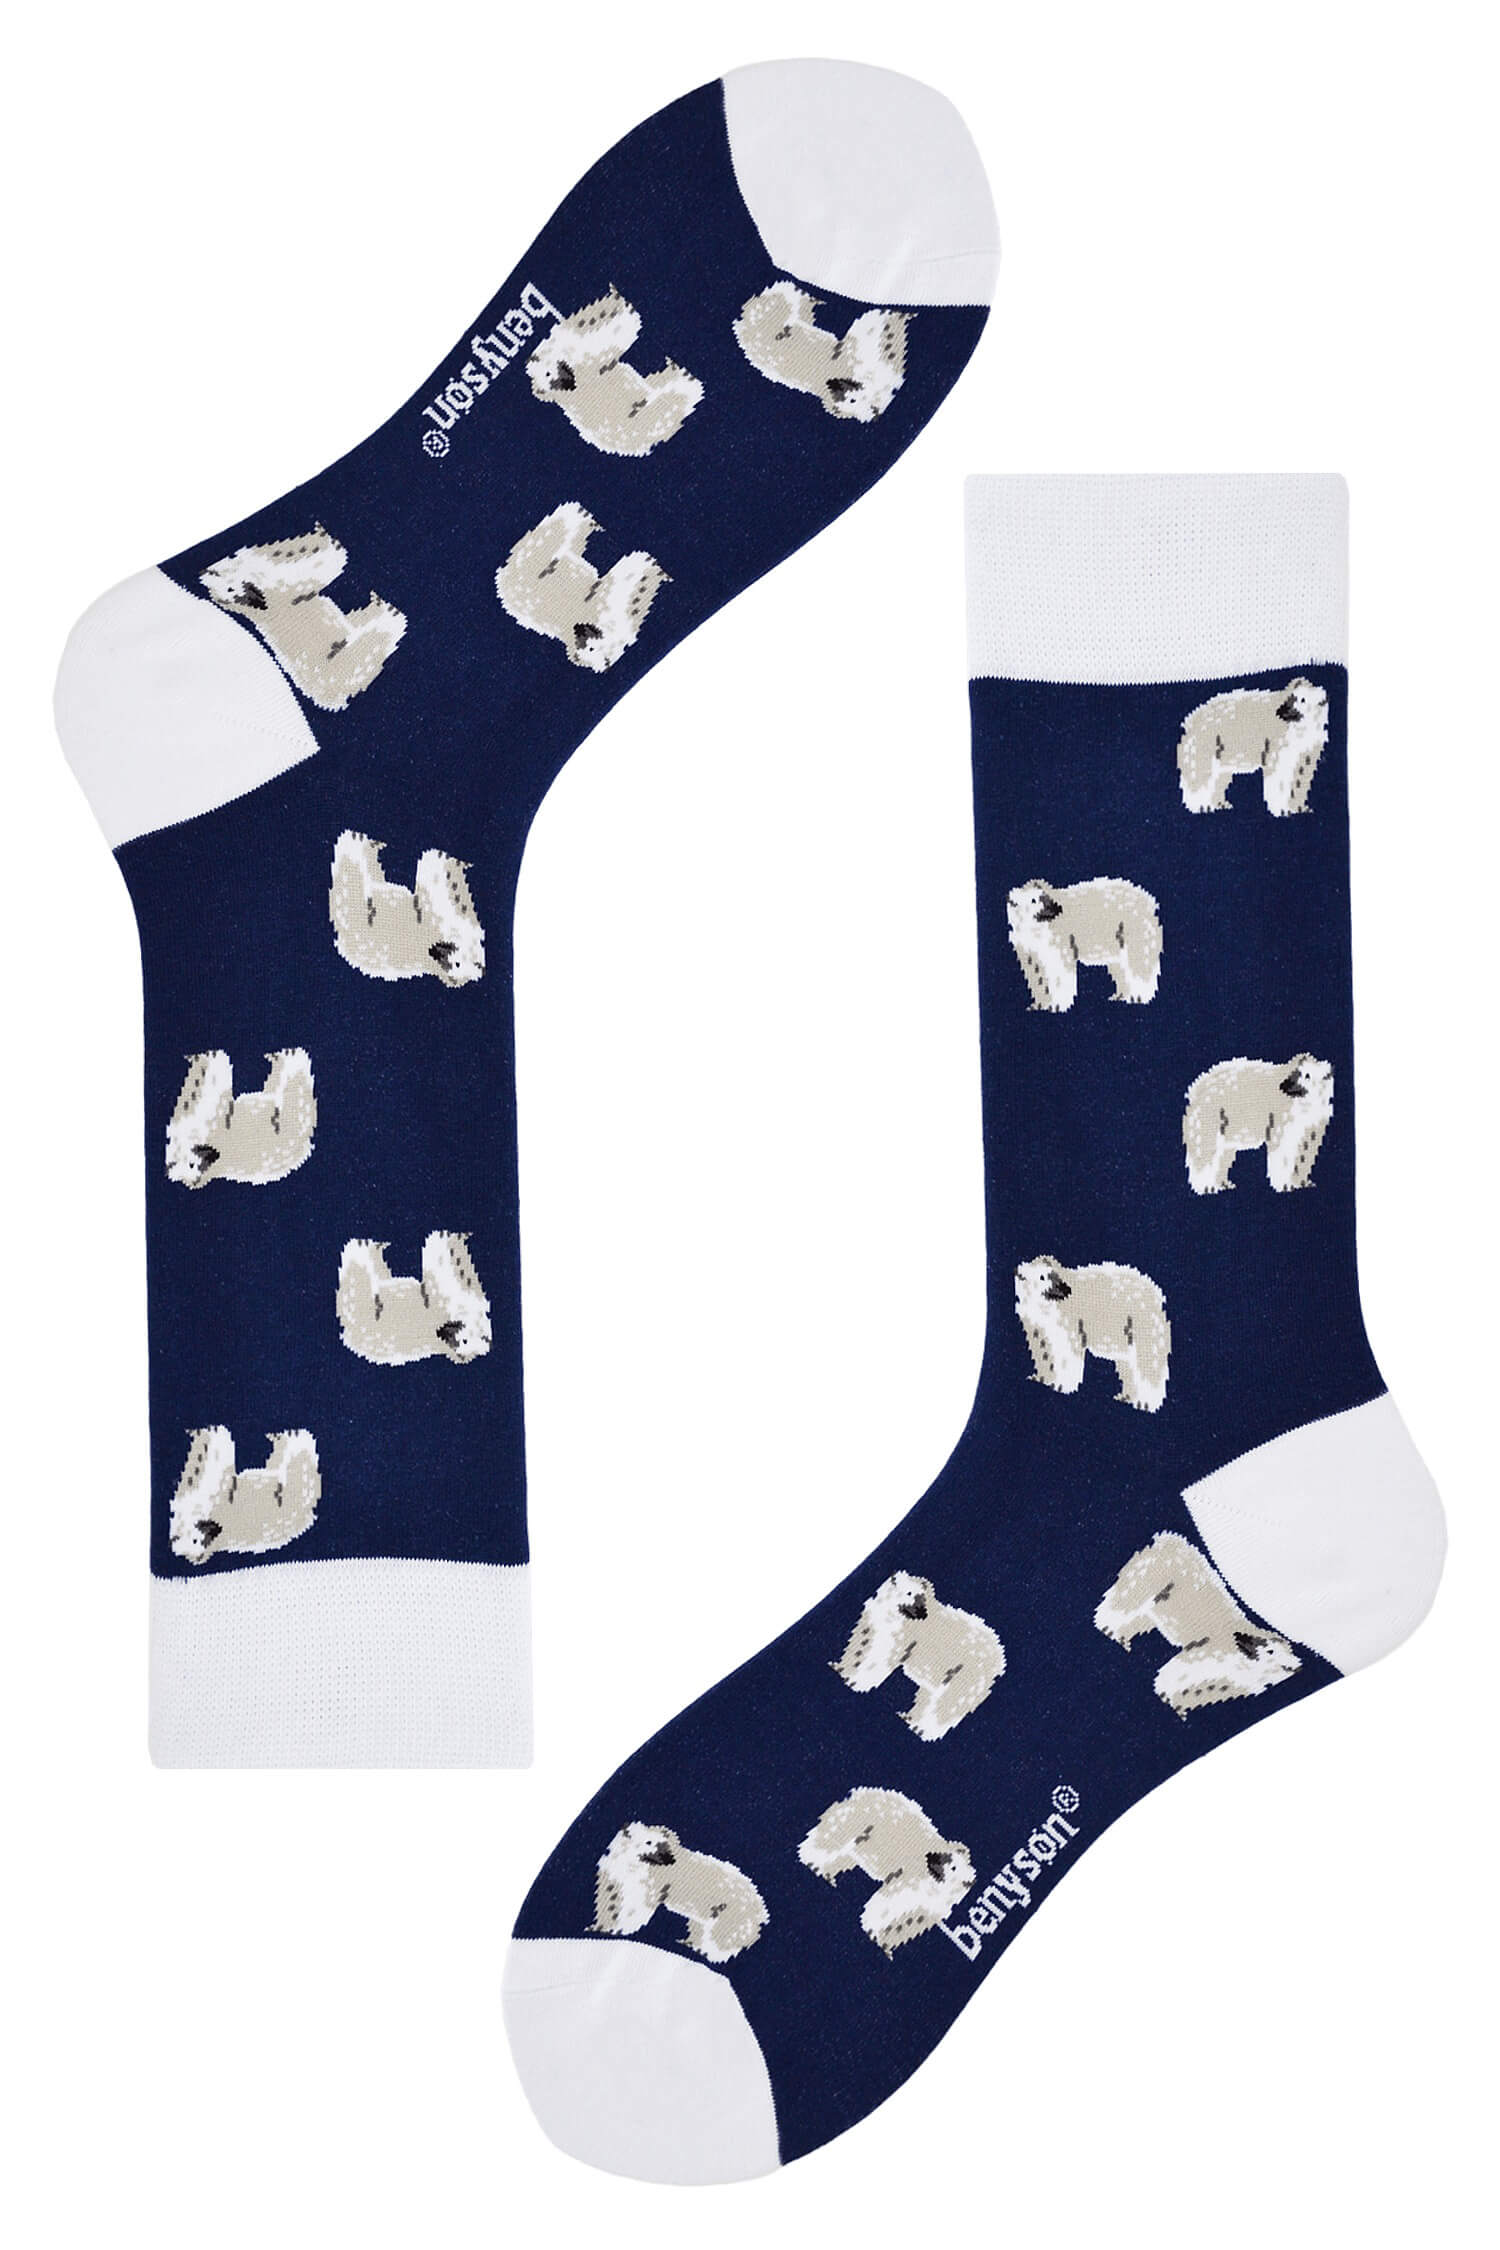 Polar bear veselé ponožky vysoké 042 36-40 tmavě modrá